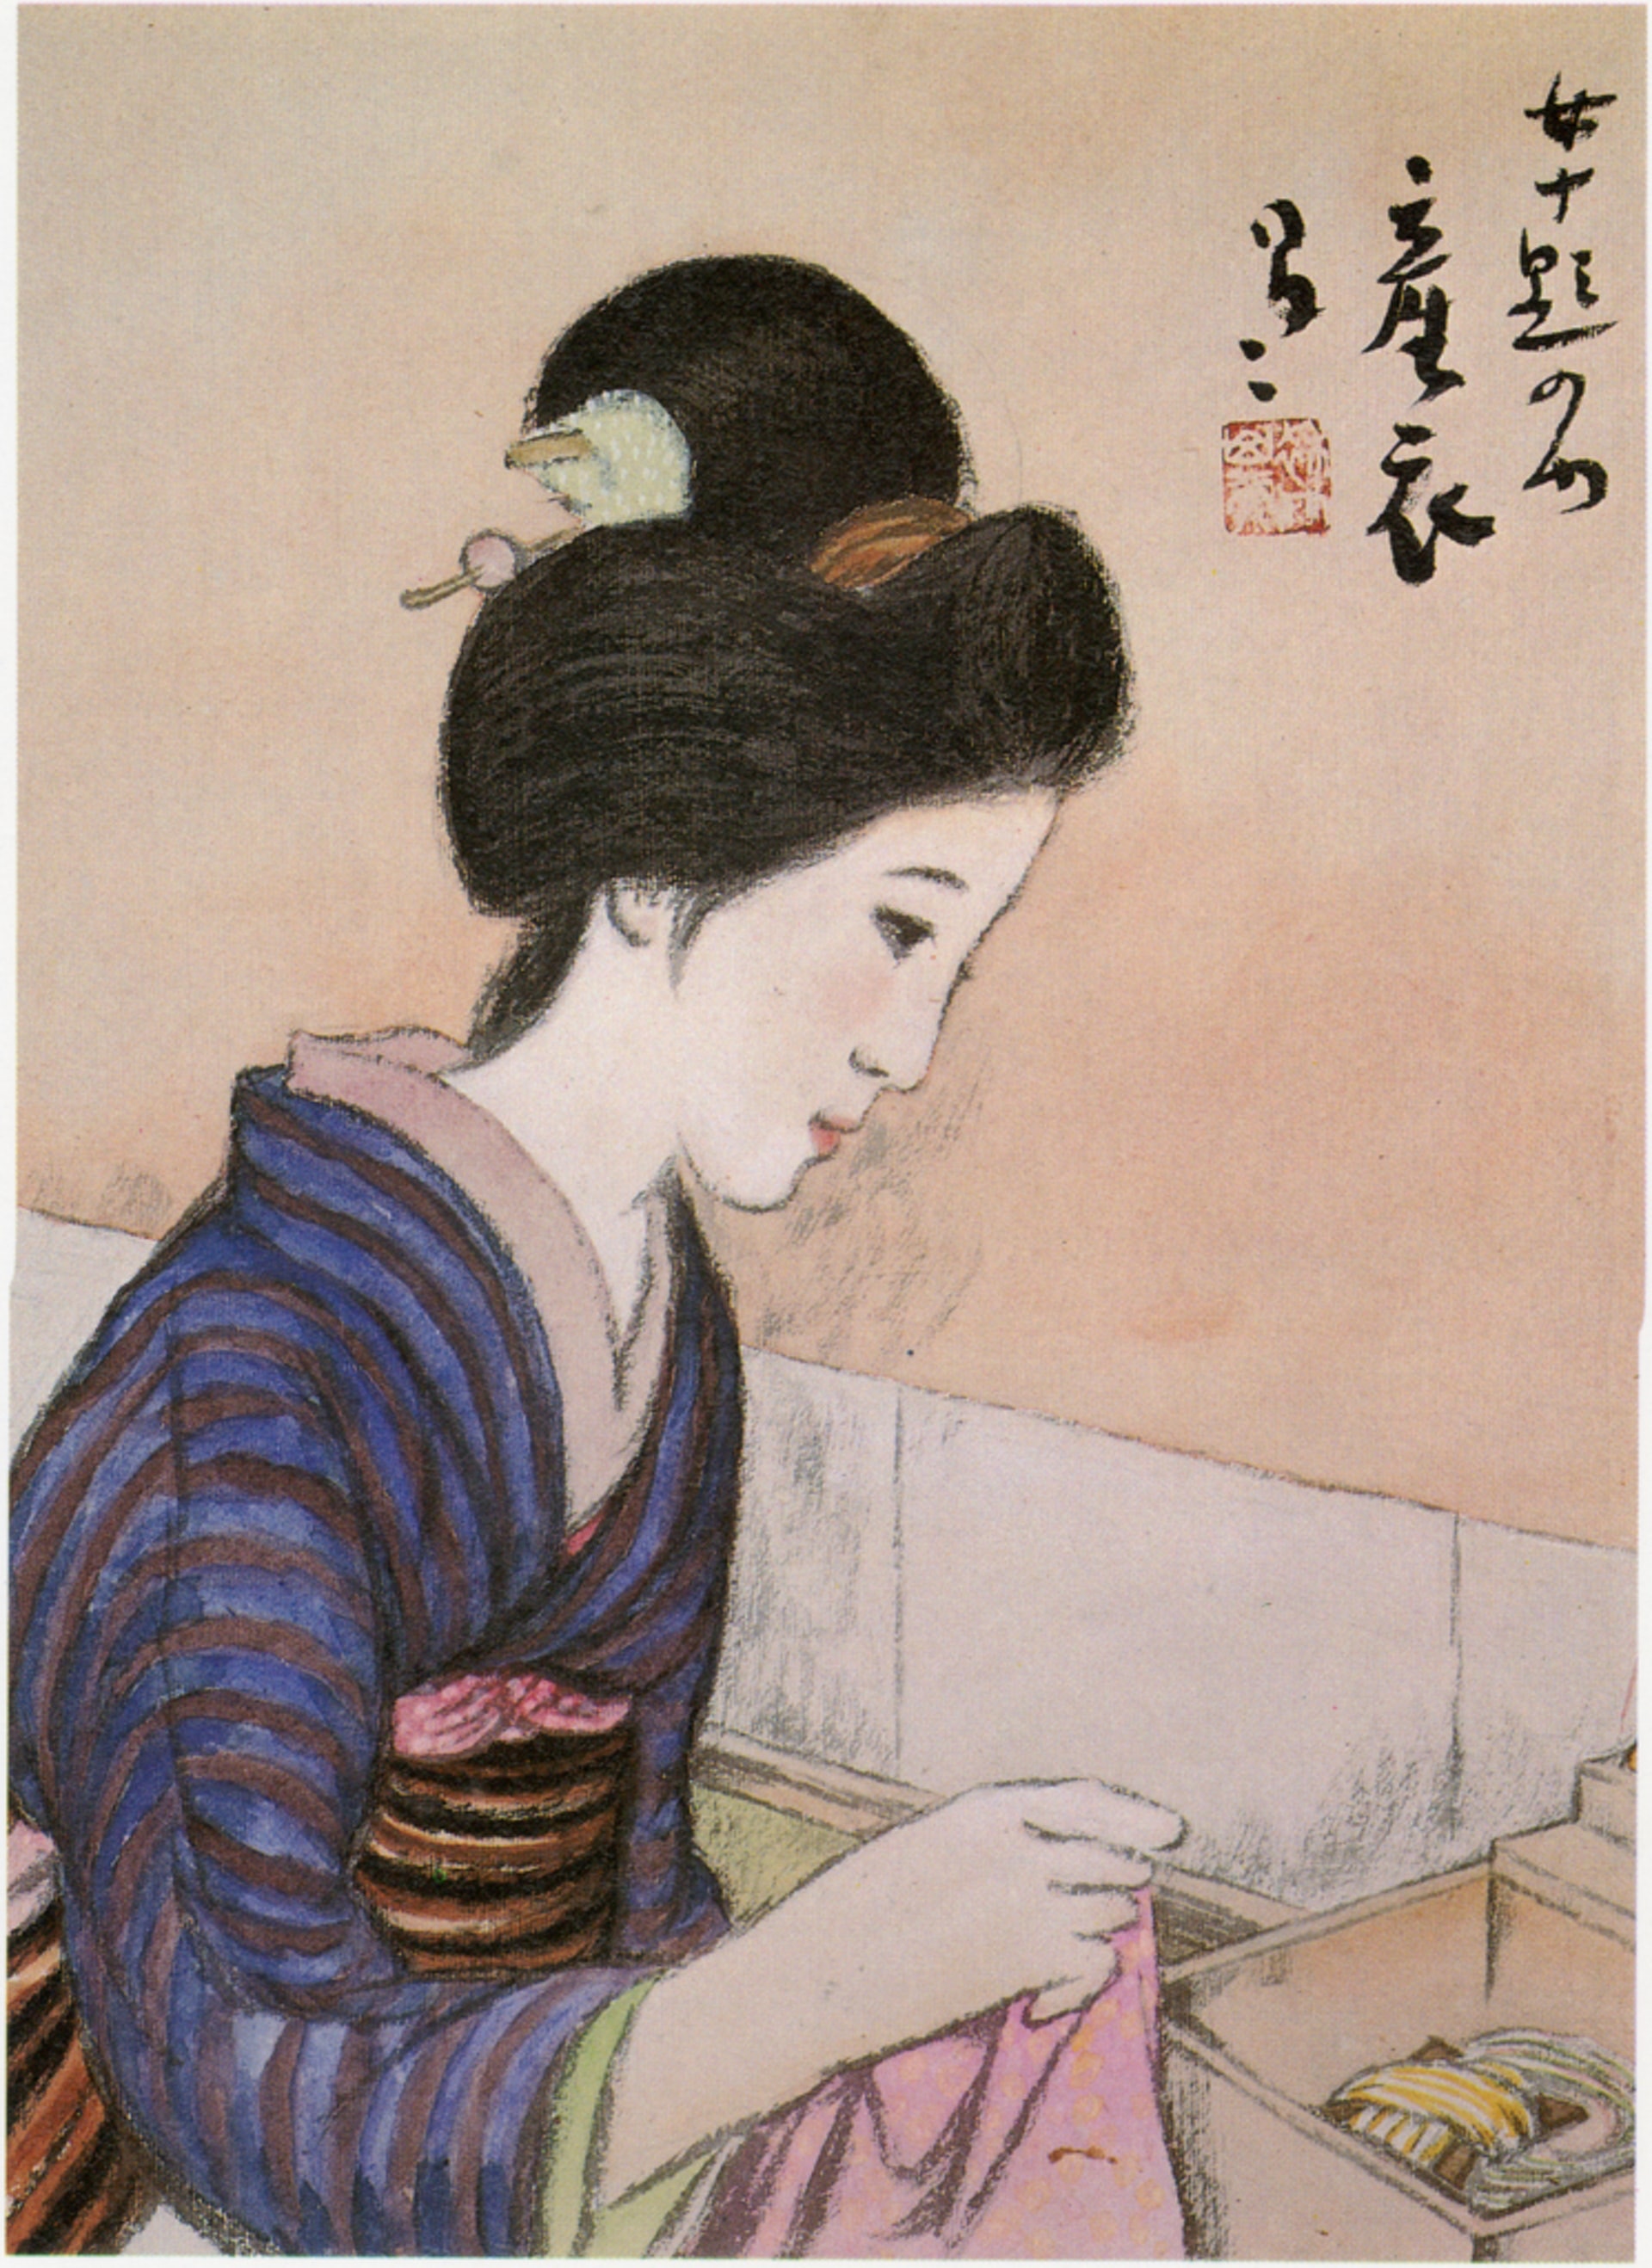 竹久夢二版画「女十題 逢状」 木版画 限180 高見澤版 - 美術品